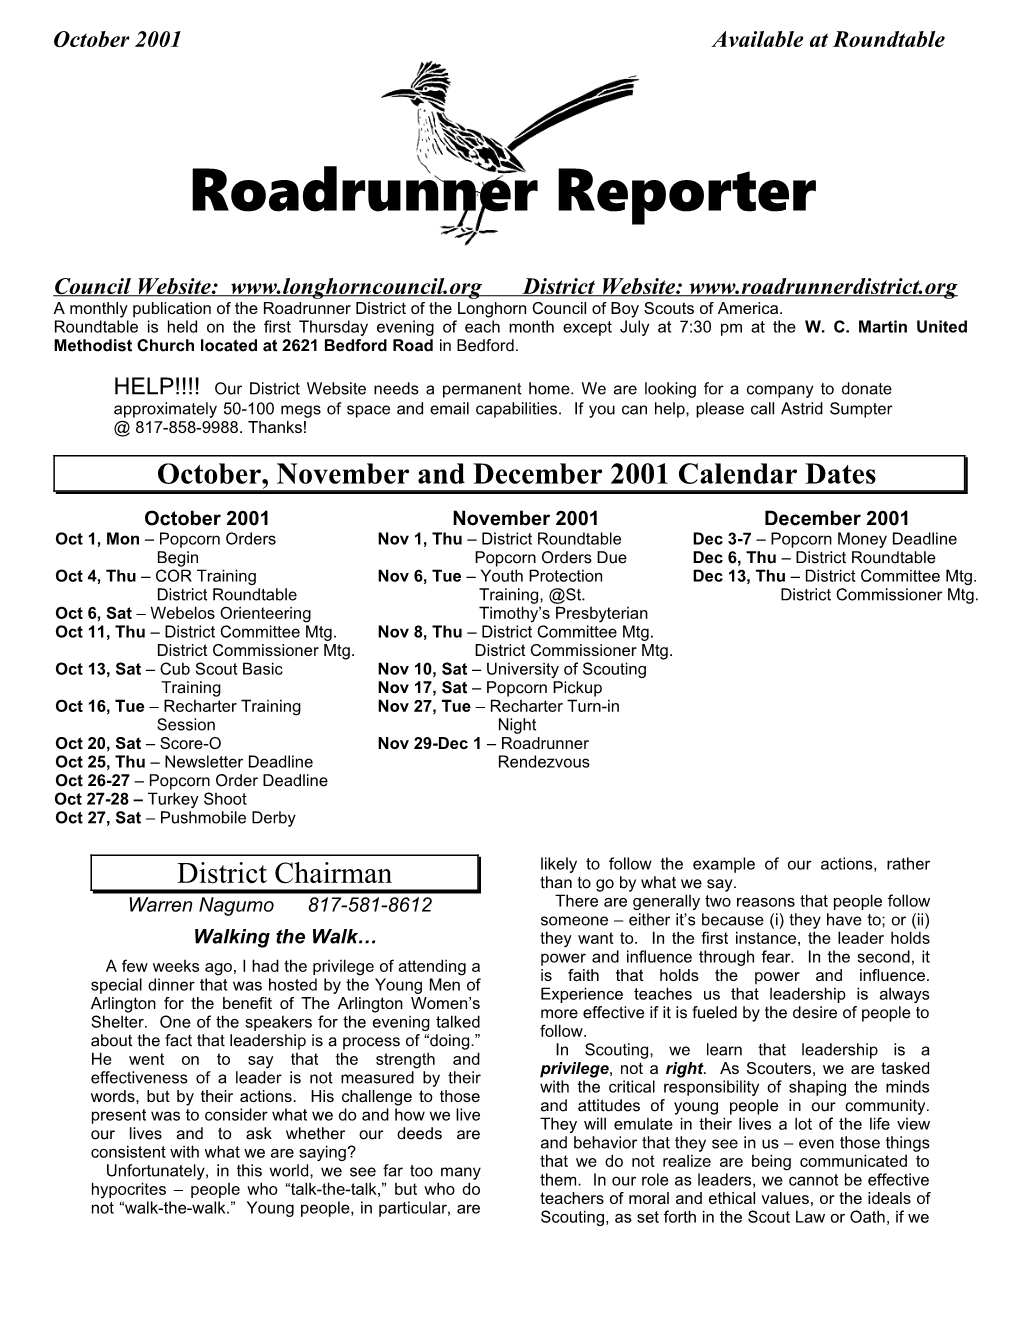 Roadrunner District Newsletter - 10/2001